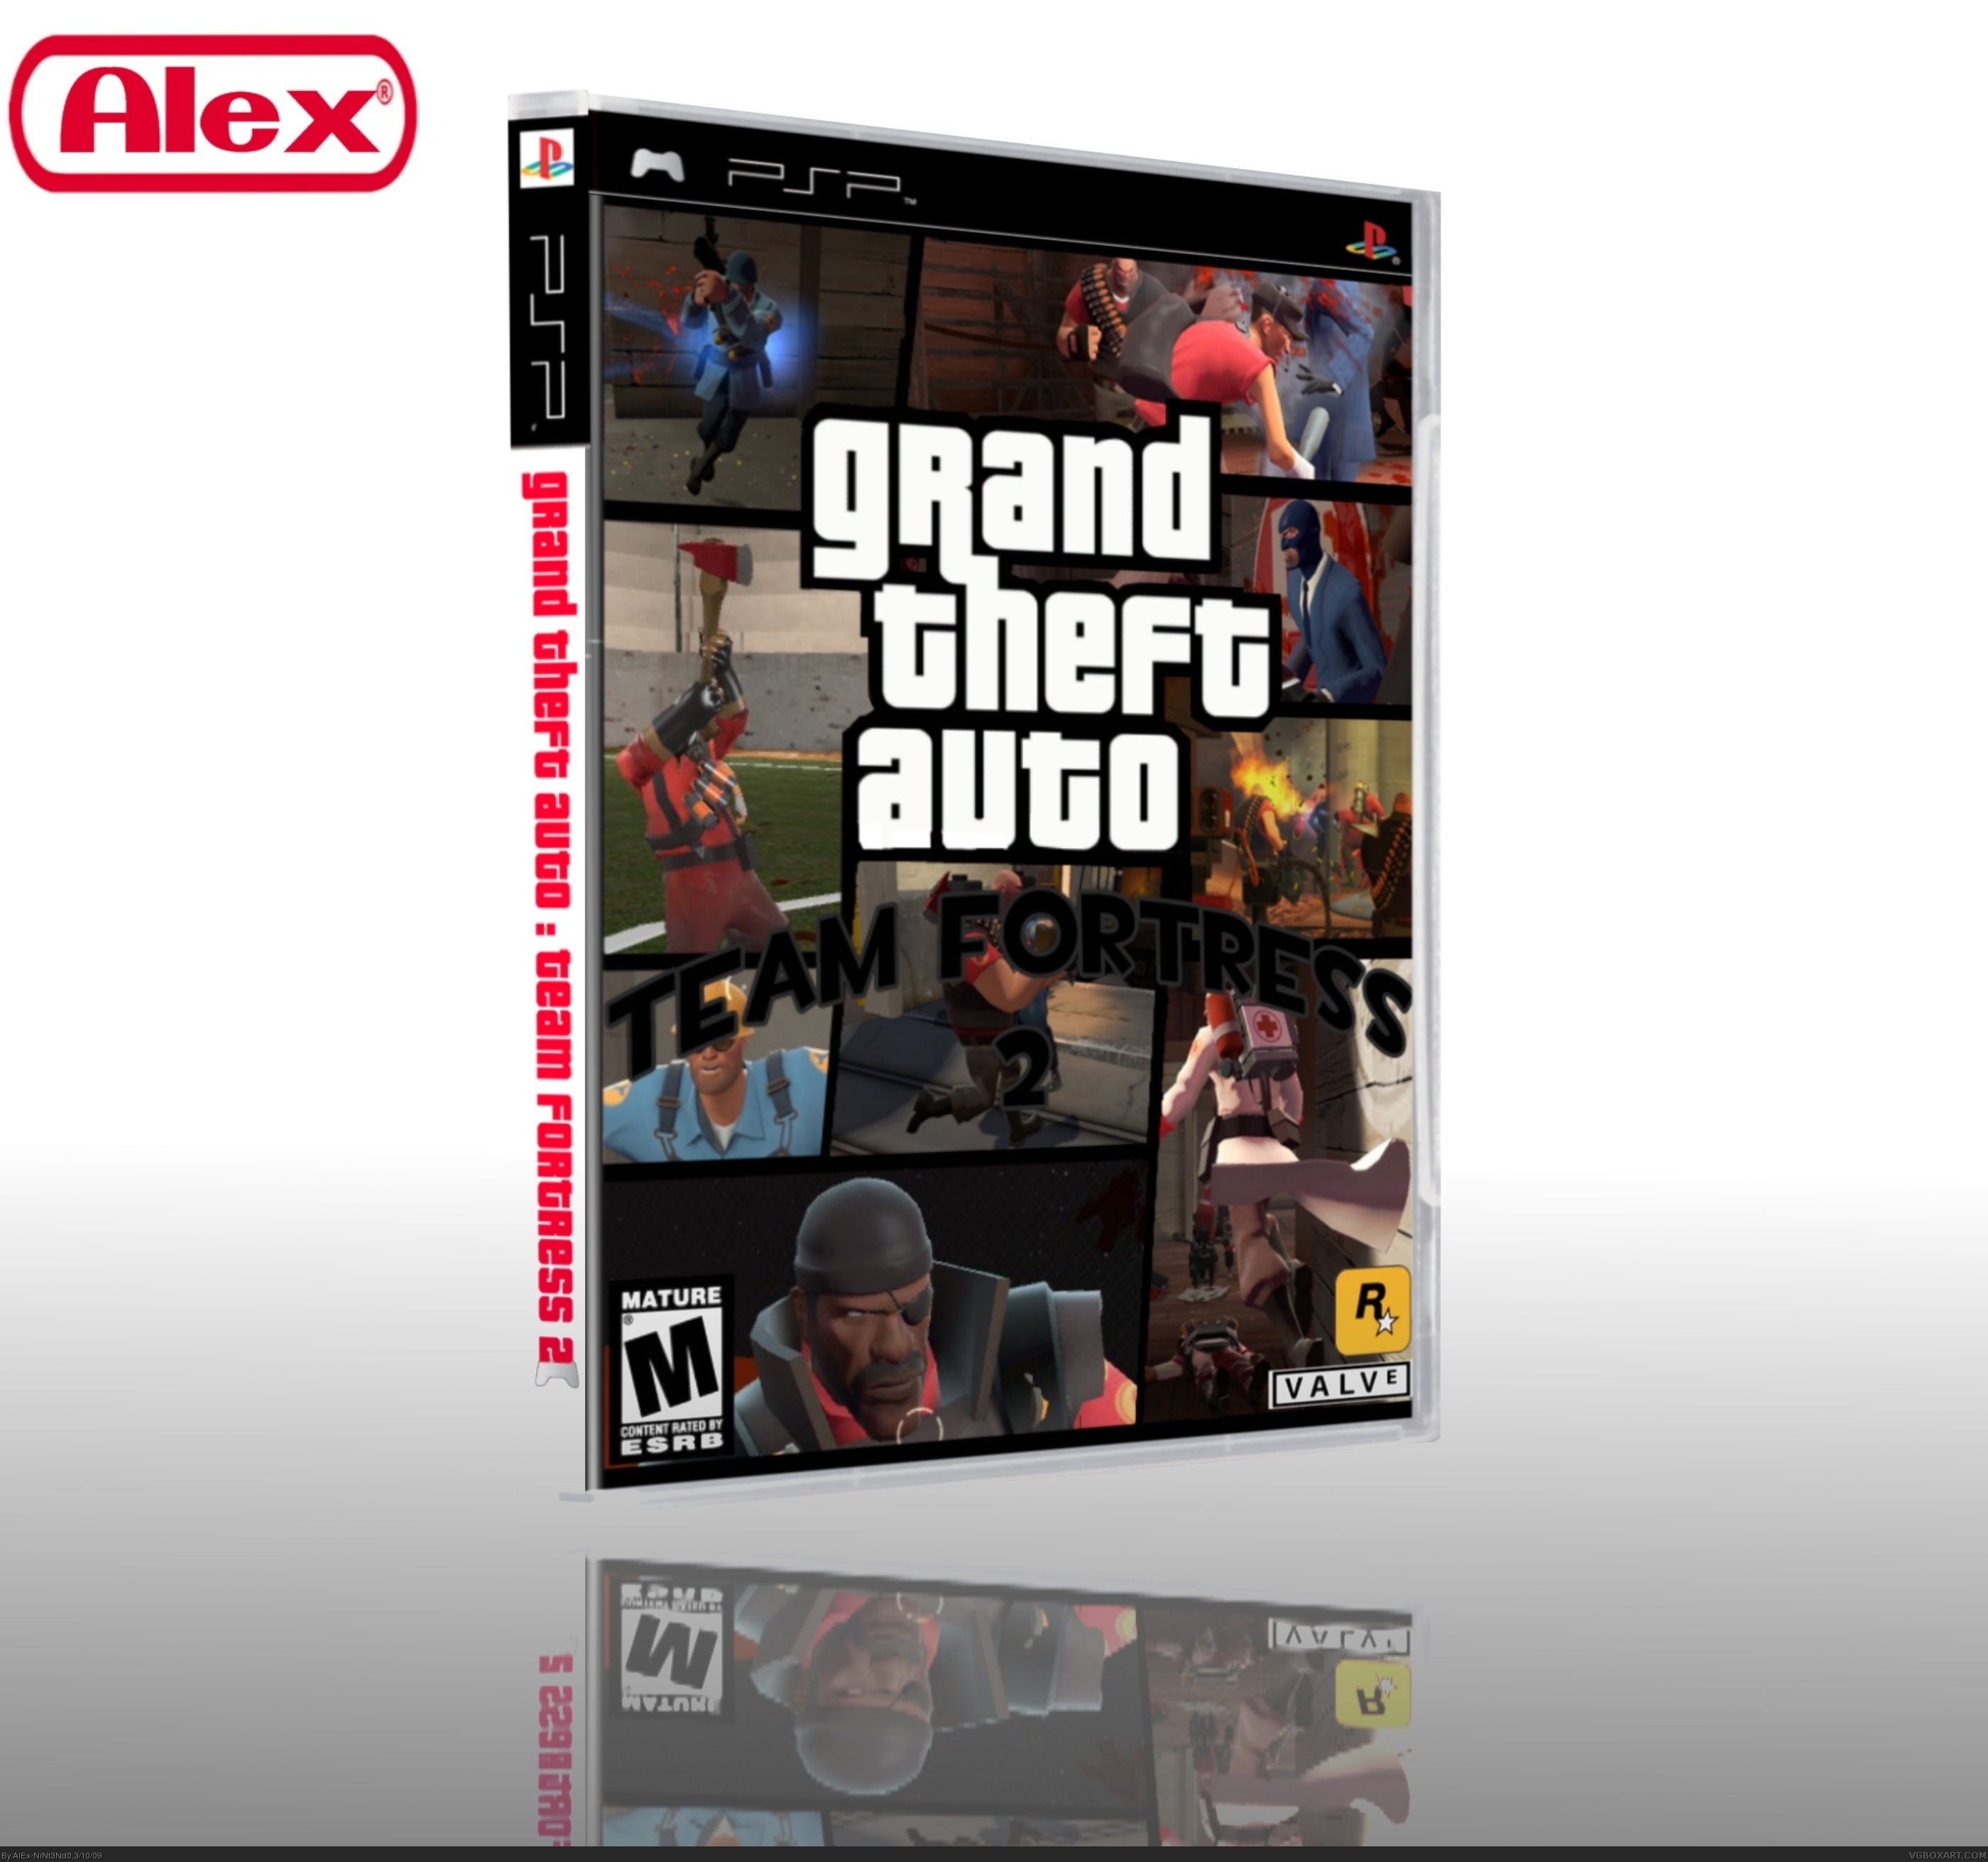 Grand Theft Auto: Team Fortress box cover